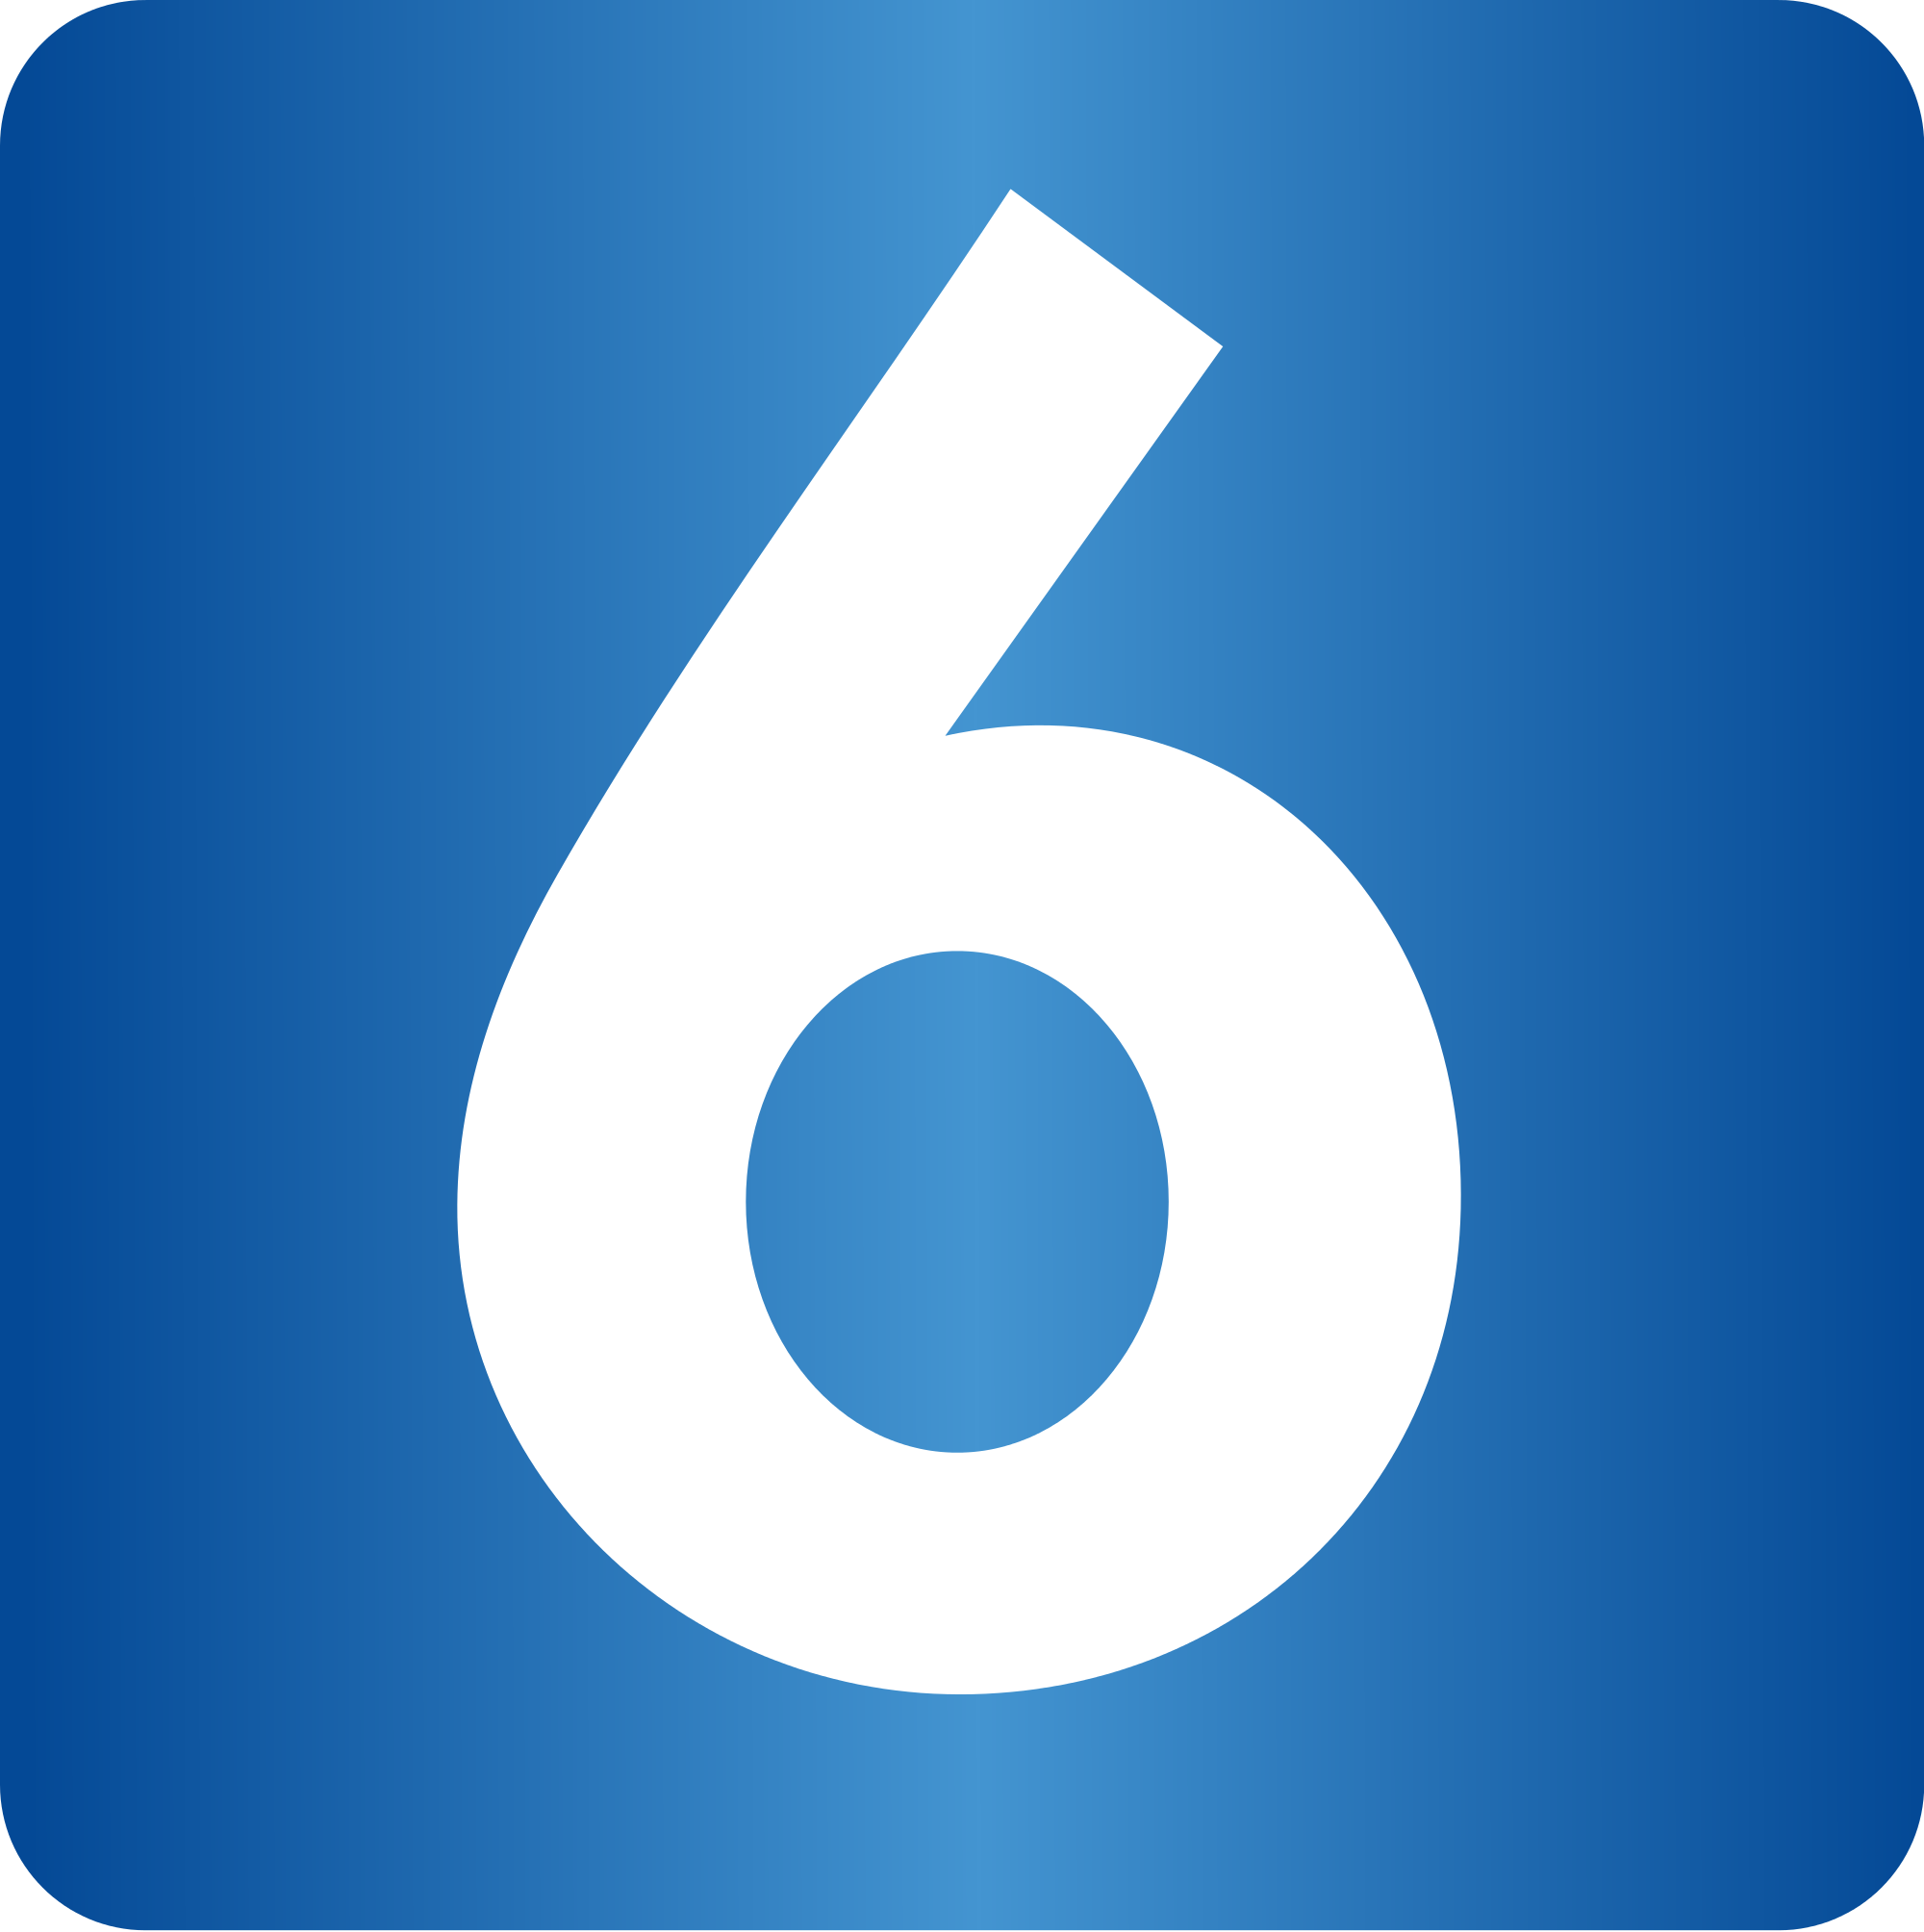 番号6